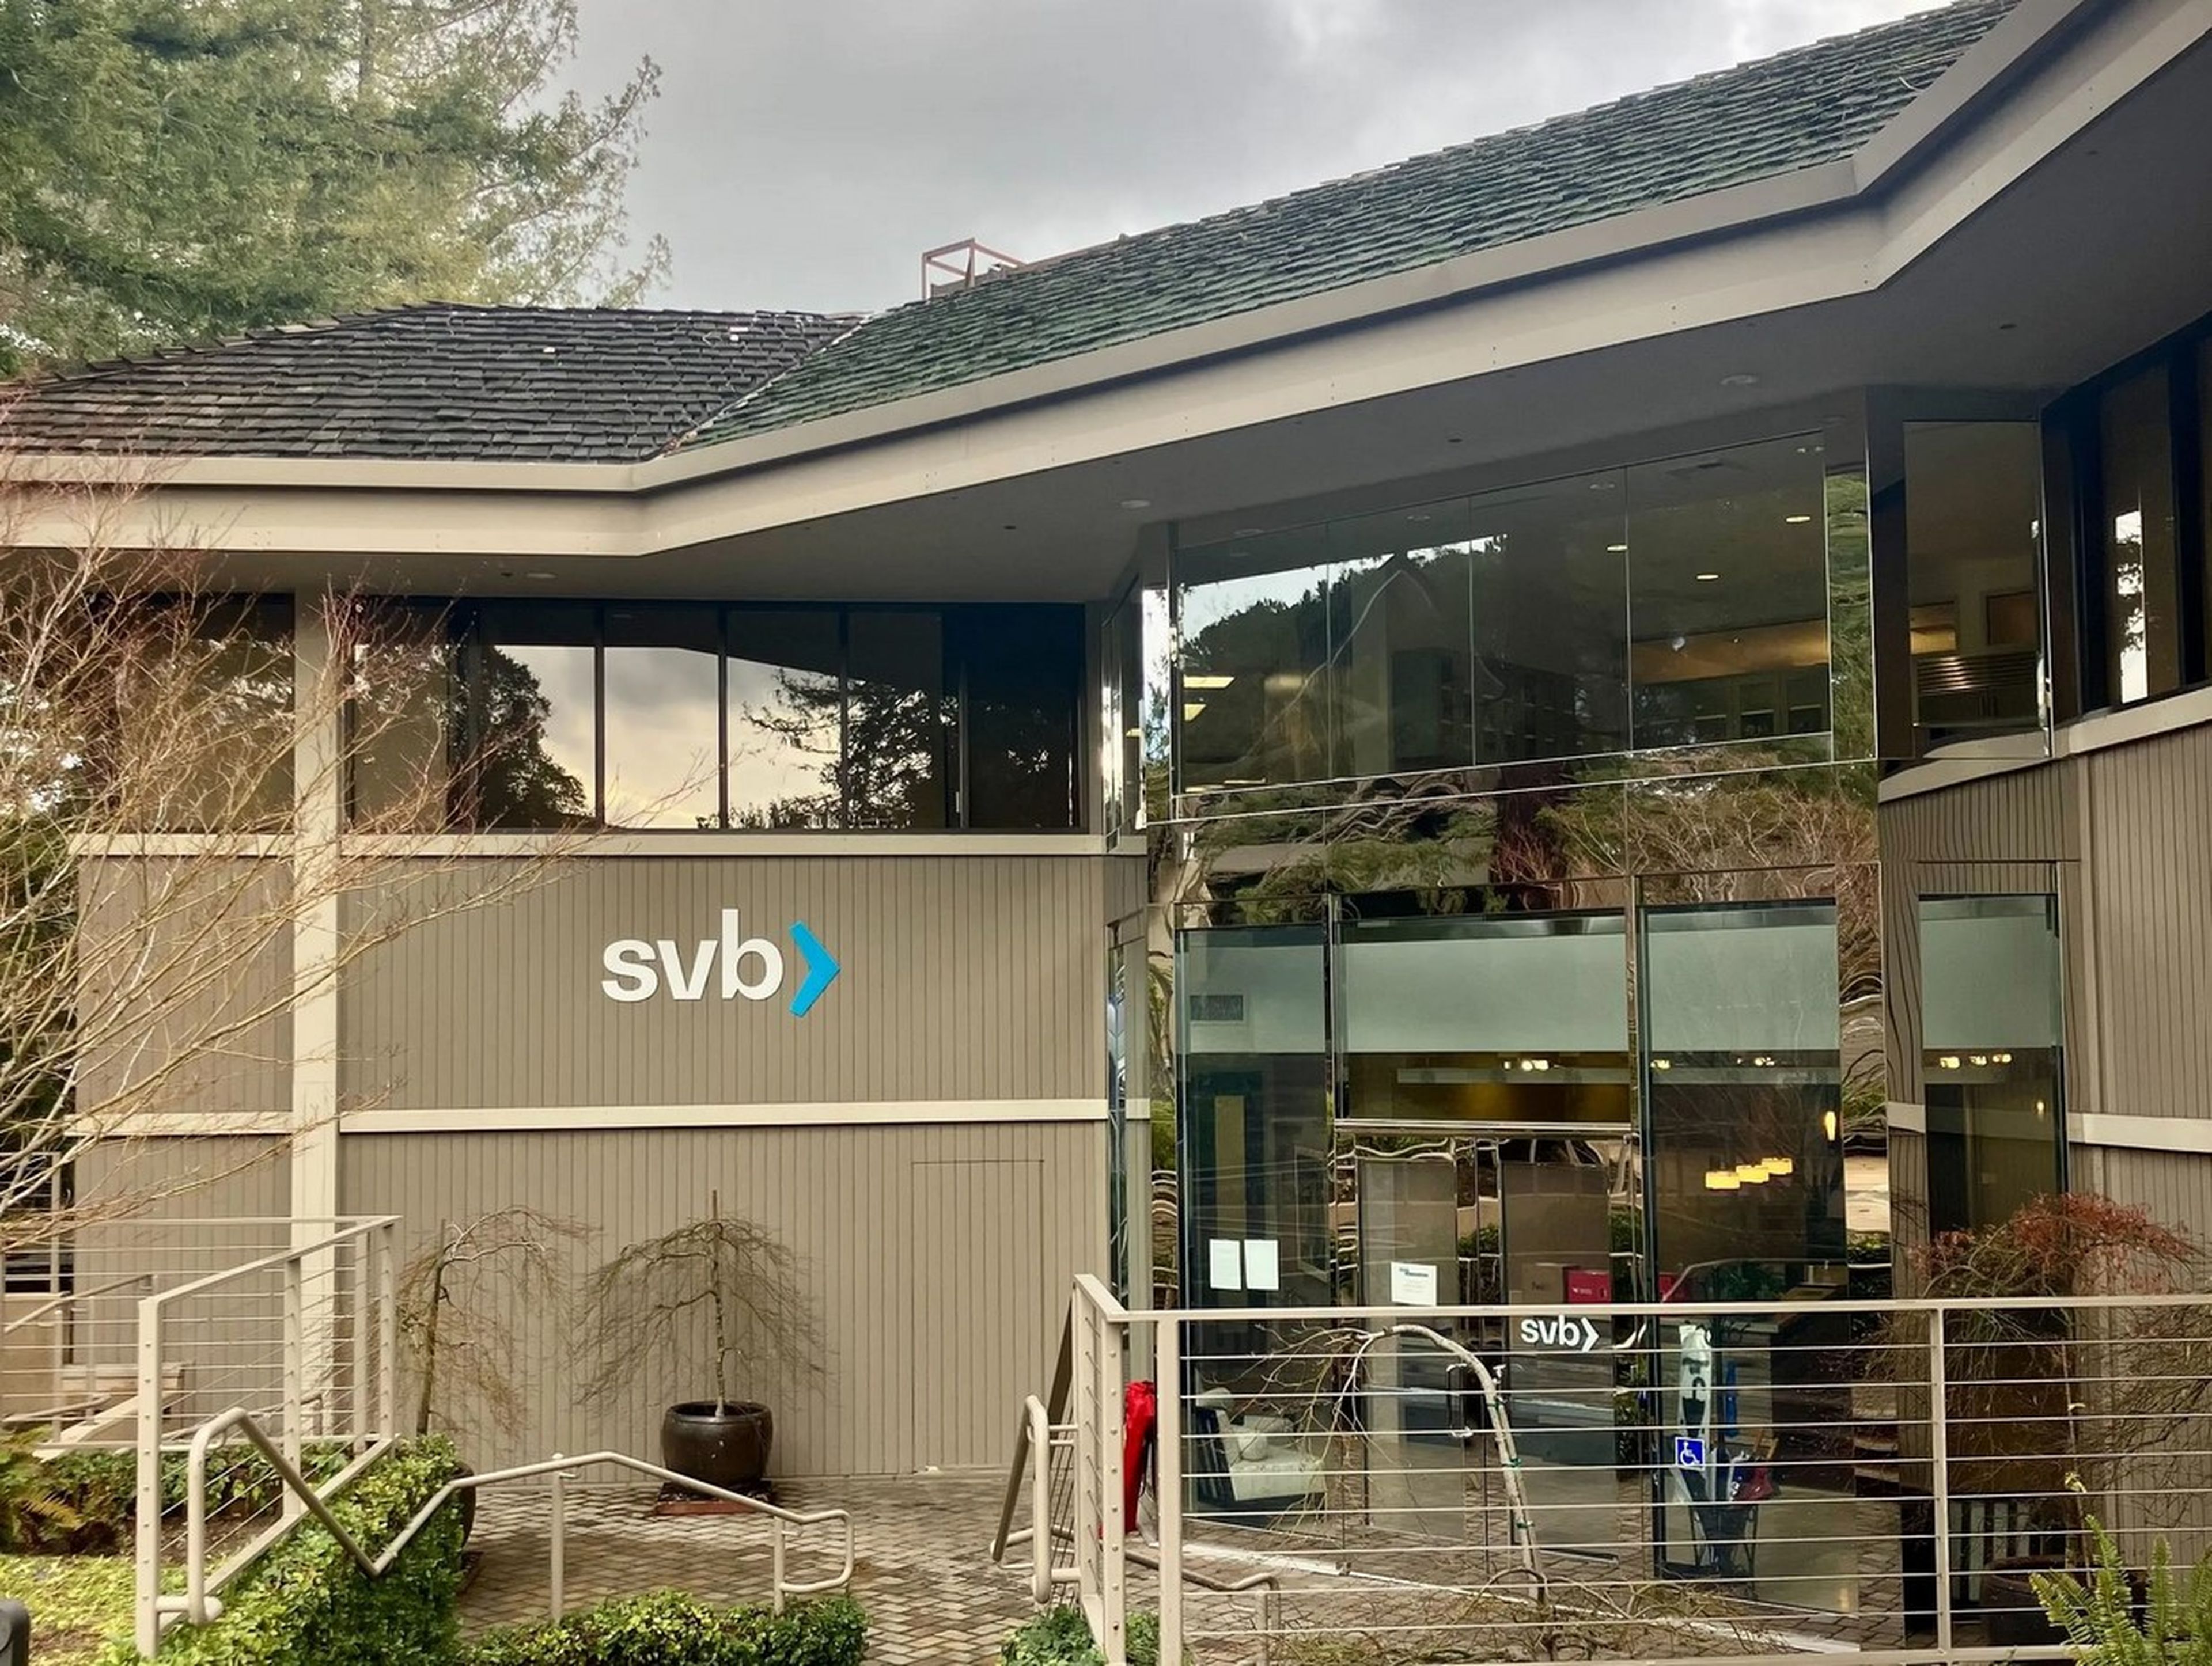 Oficina de SVB en Sand Hill Road, en Silicon Valley, el 10 de marzo de 2023.